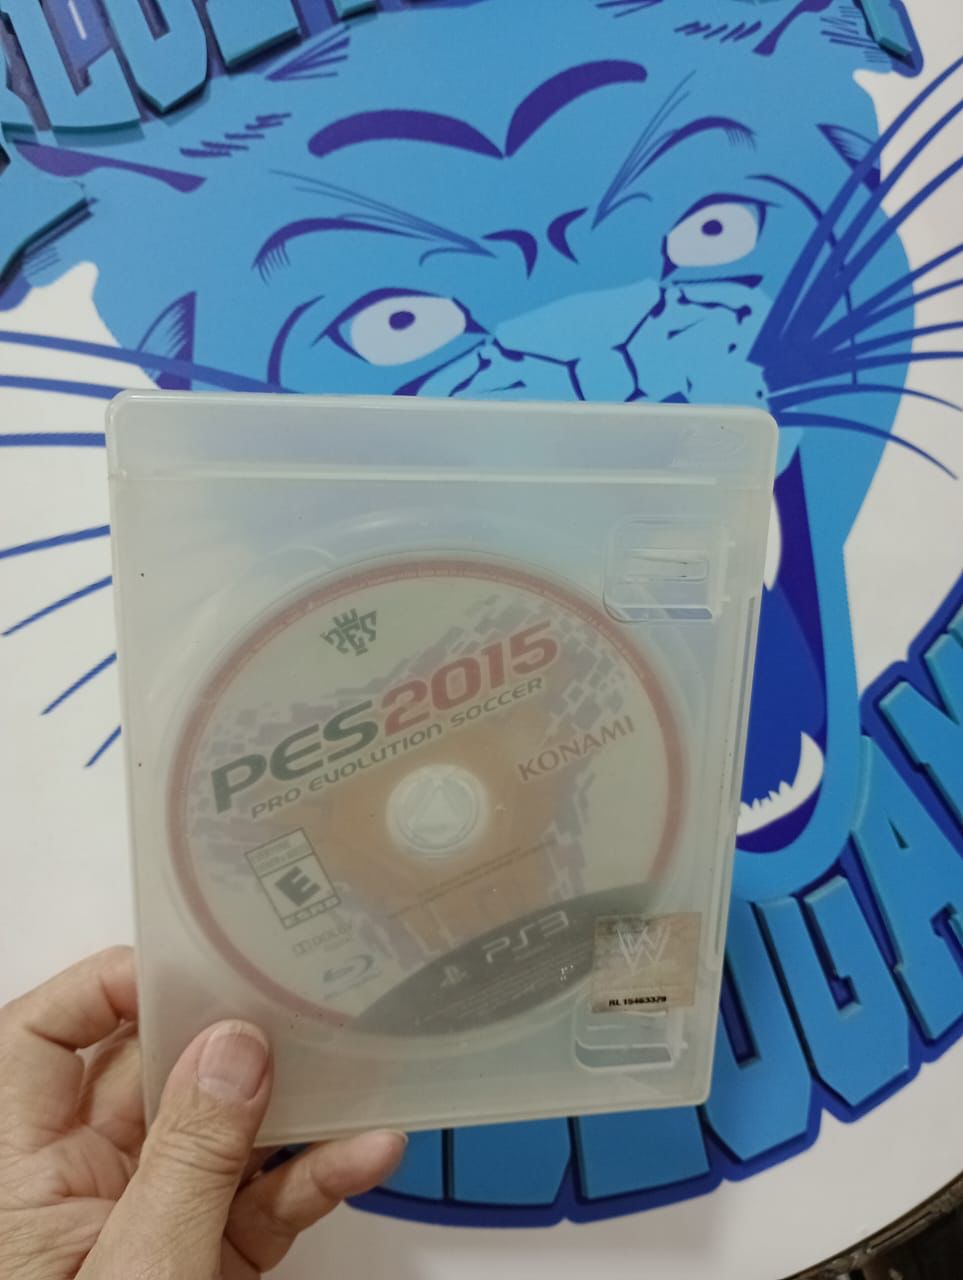 Pes 2015-Playstation 3